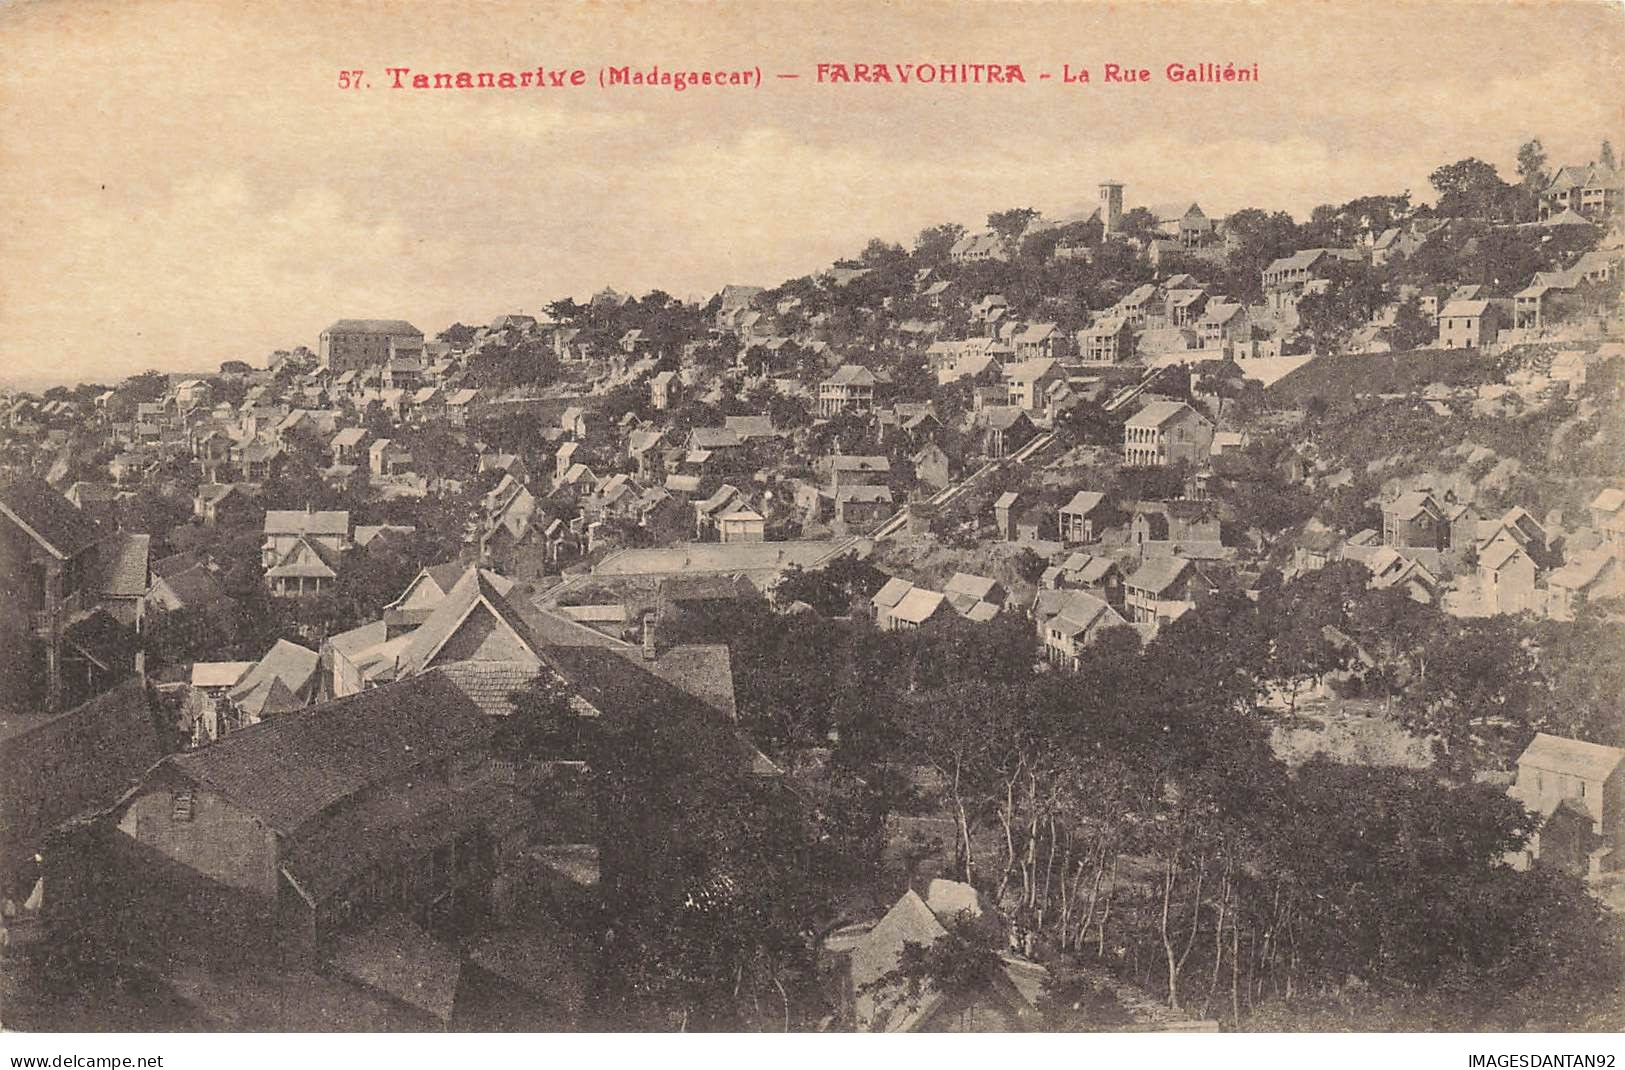 MADAGASCAR #27952 TANANARIVE FARAVOHITRA RUE GALLIENI - Madagaskar